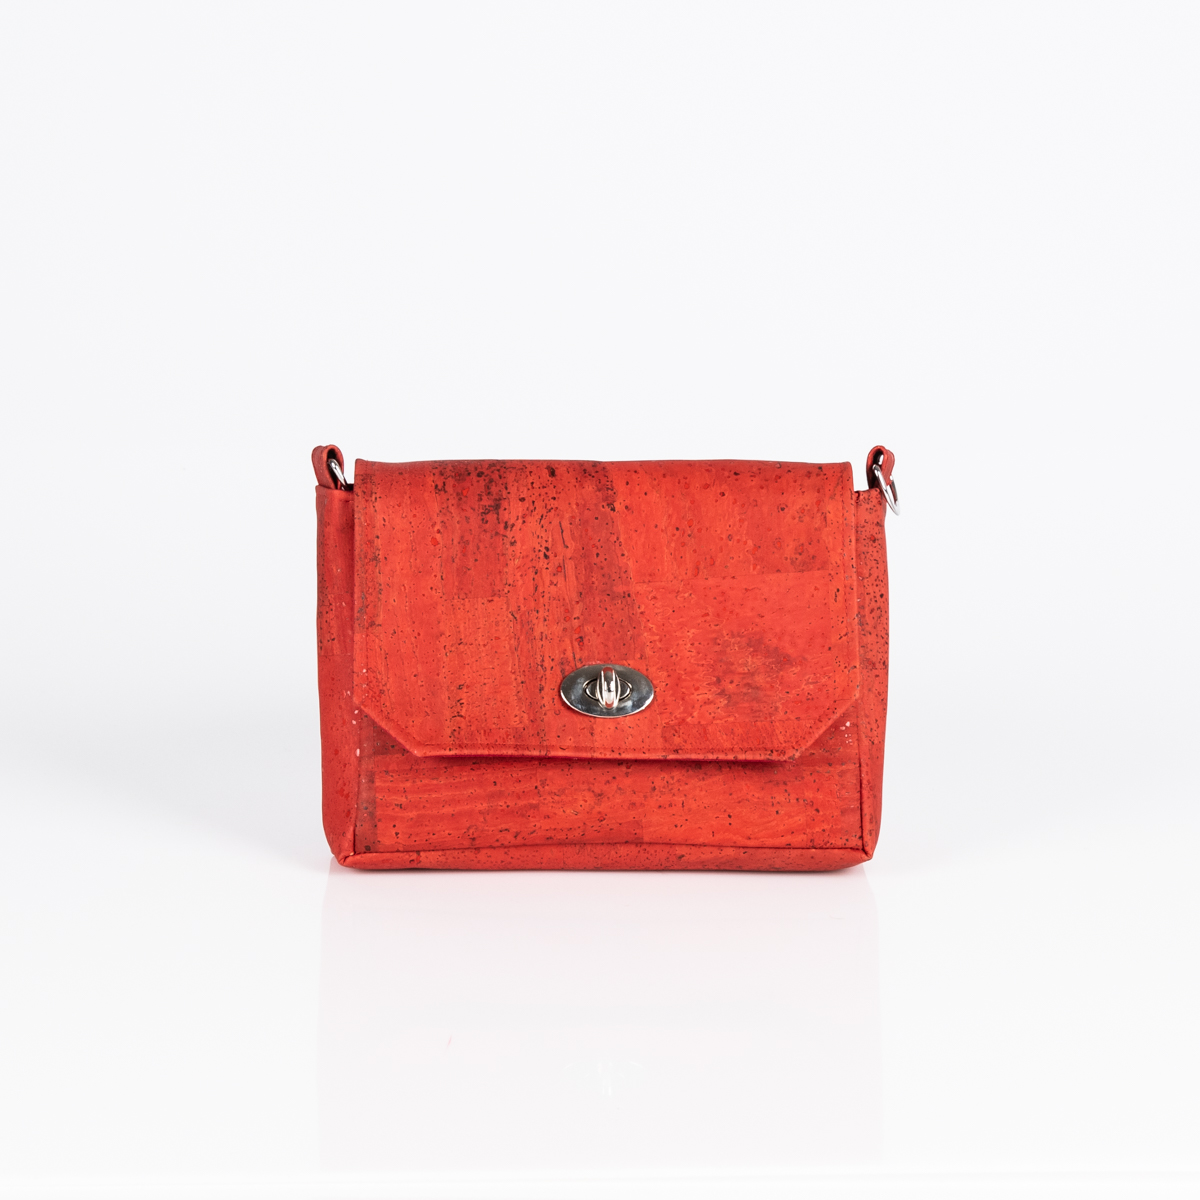 Handtasche Sally in Rot von Q.Linda Manufaktur Vorderansicht